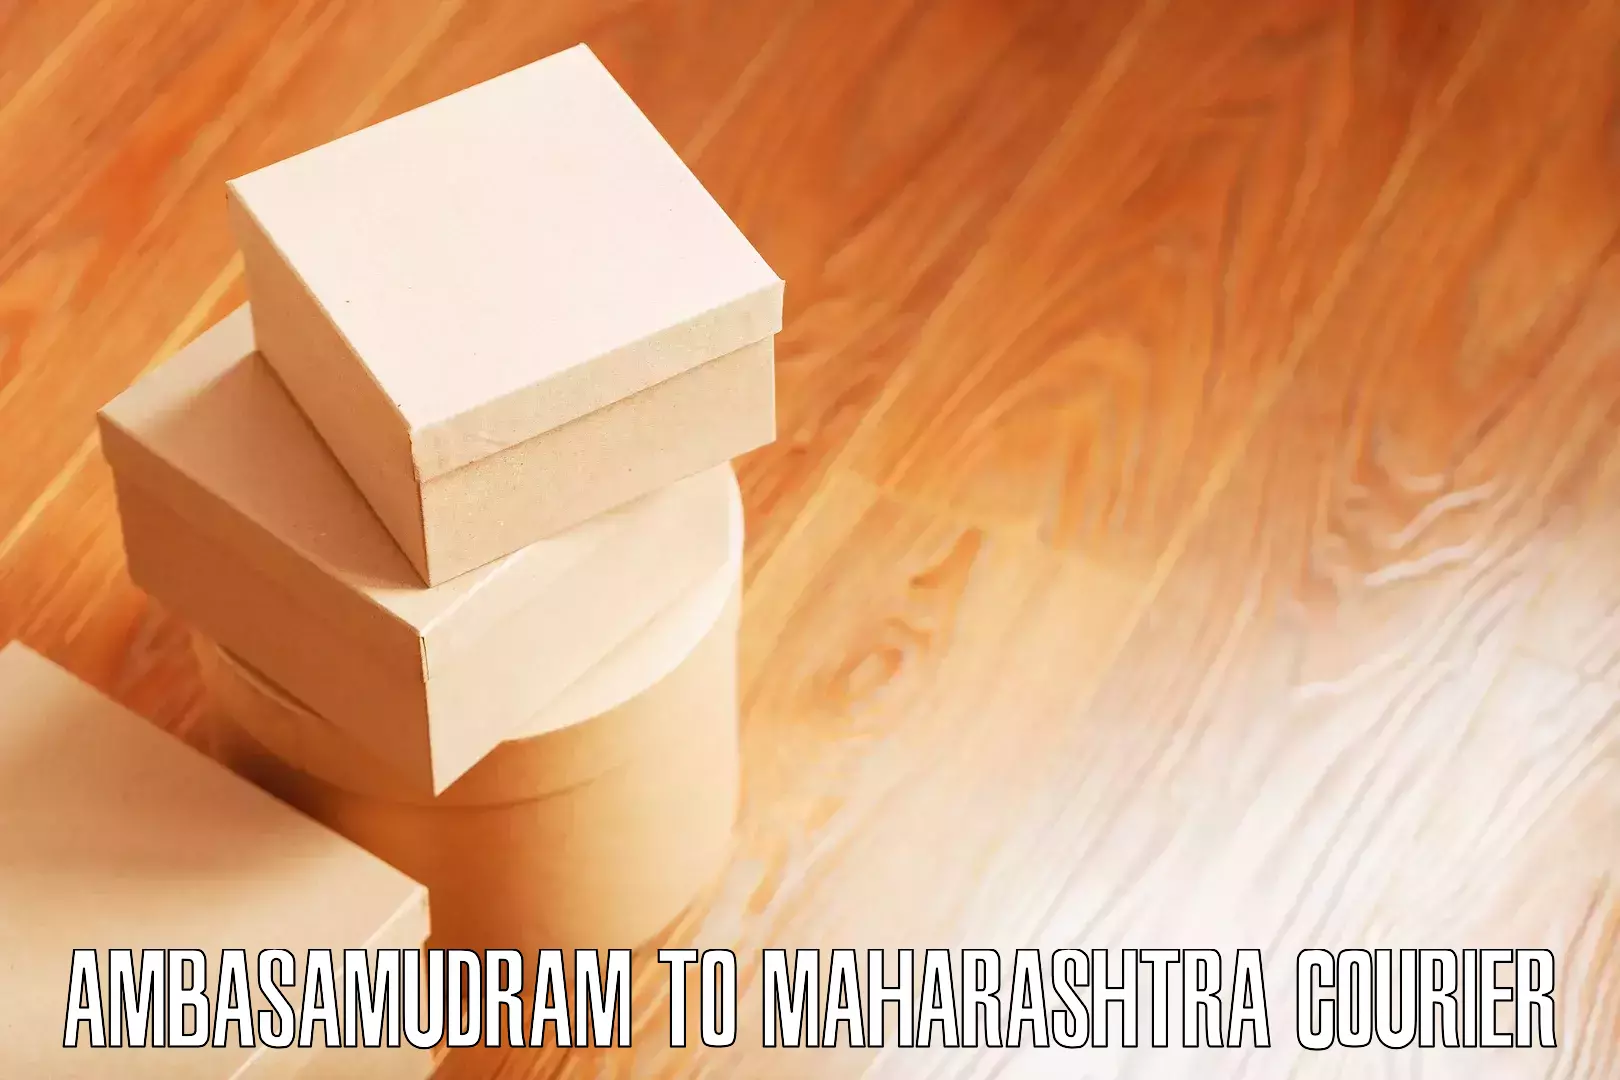 Customized relocation services Ambasamudram to Maharashtra